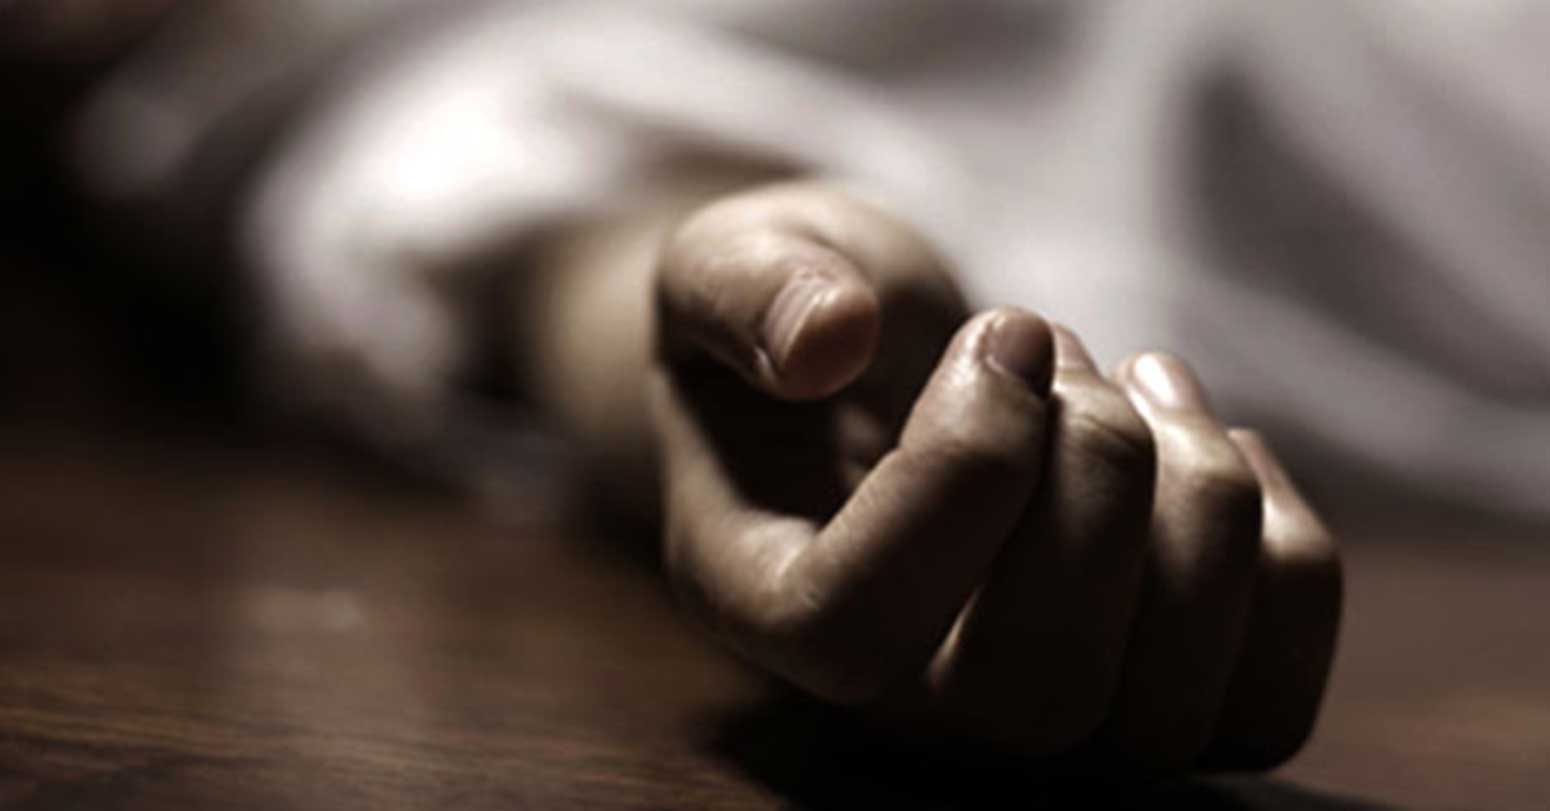 खोलामा डुबेर भारतीय युवतीसहित दुईको मृत्यु